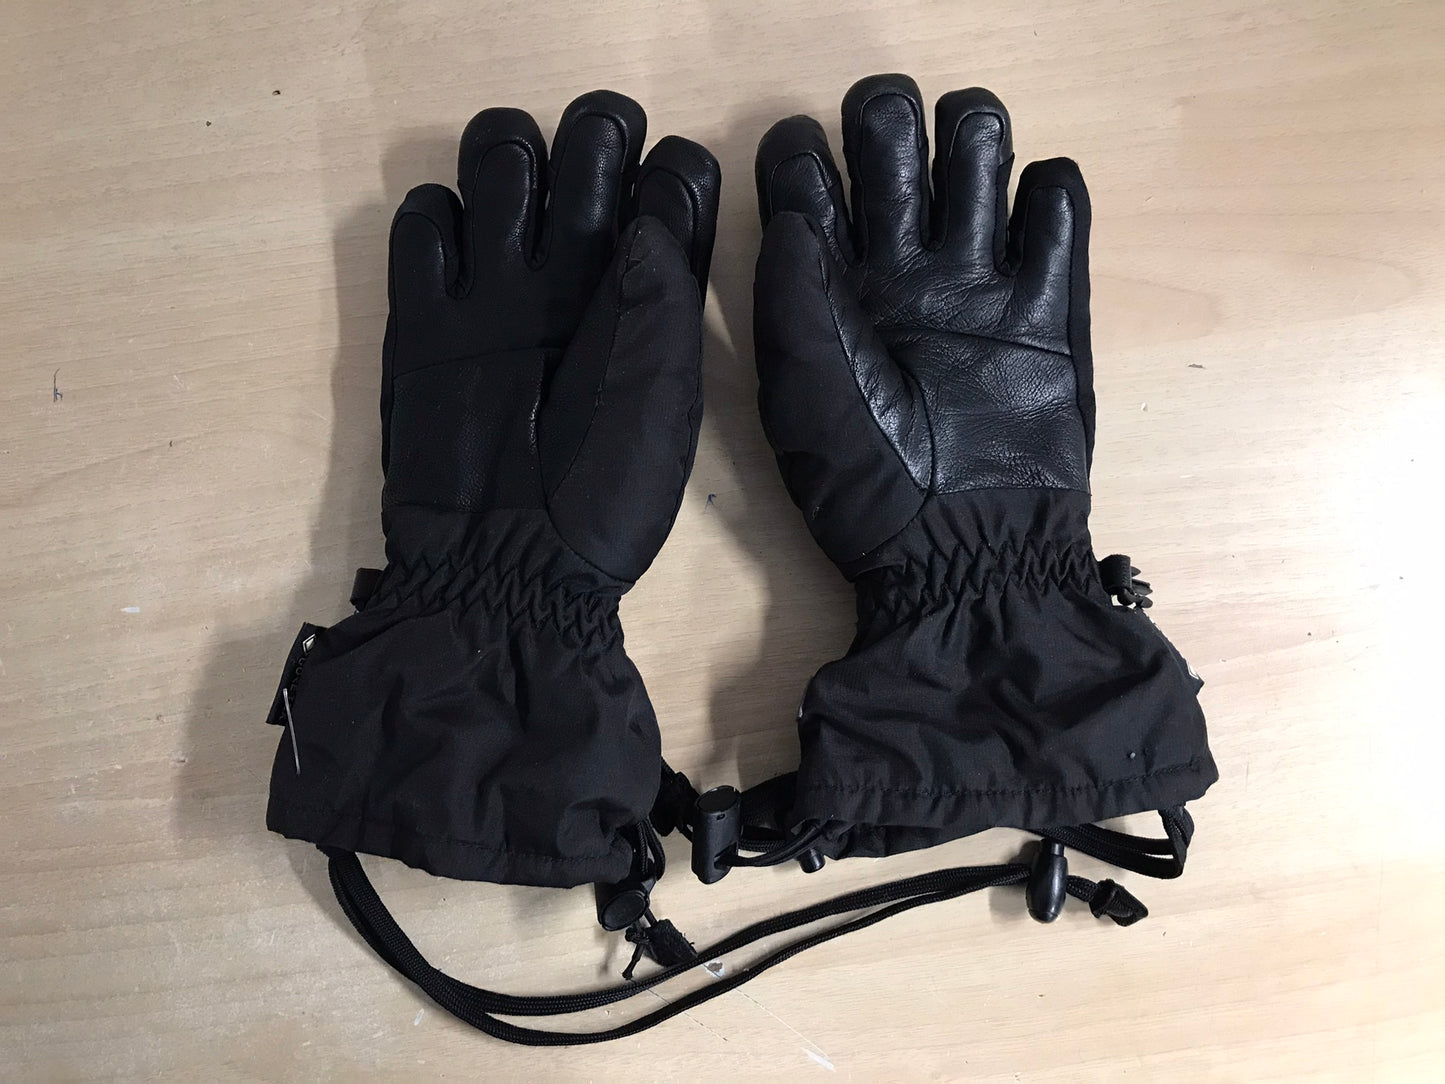 Winter Gloves and Mitts Child Size 7-9 Dakine Gore-Tex Plus Warm Waterproof Ski Gloves